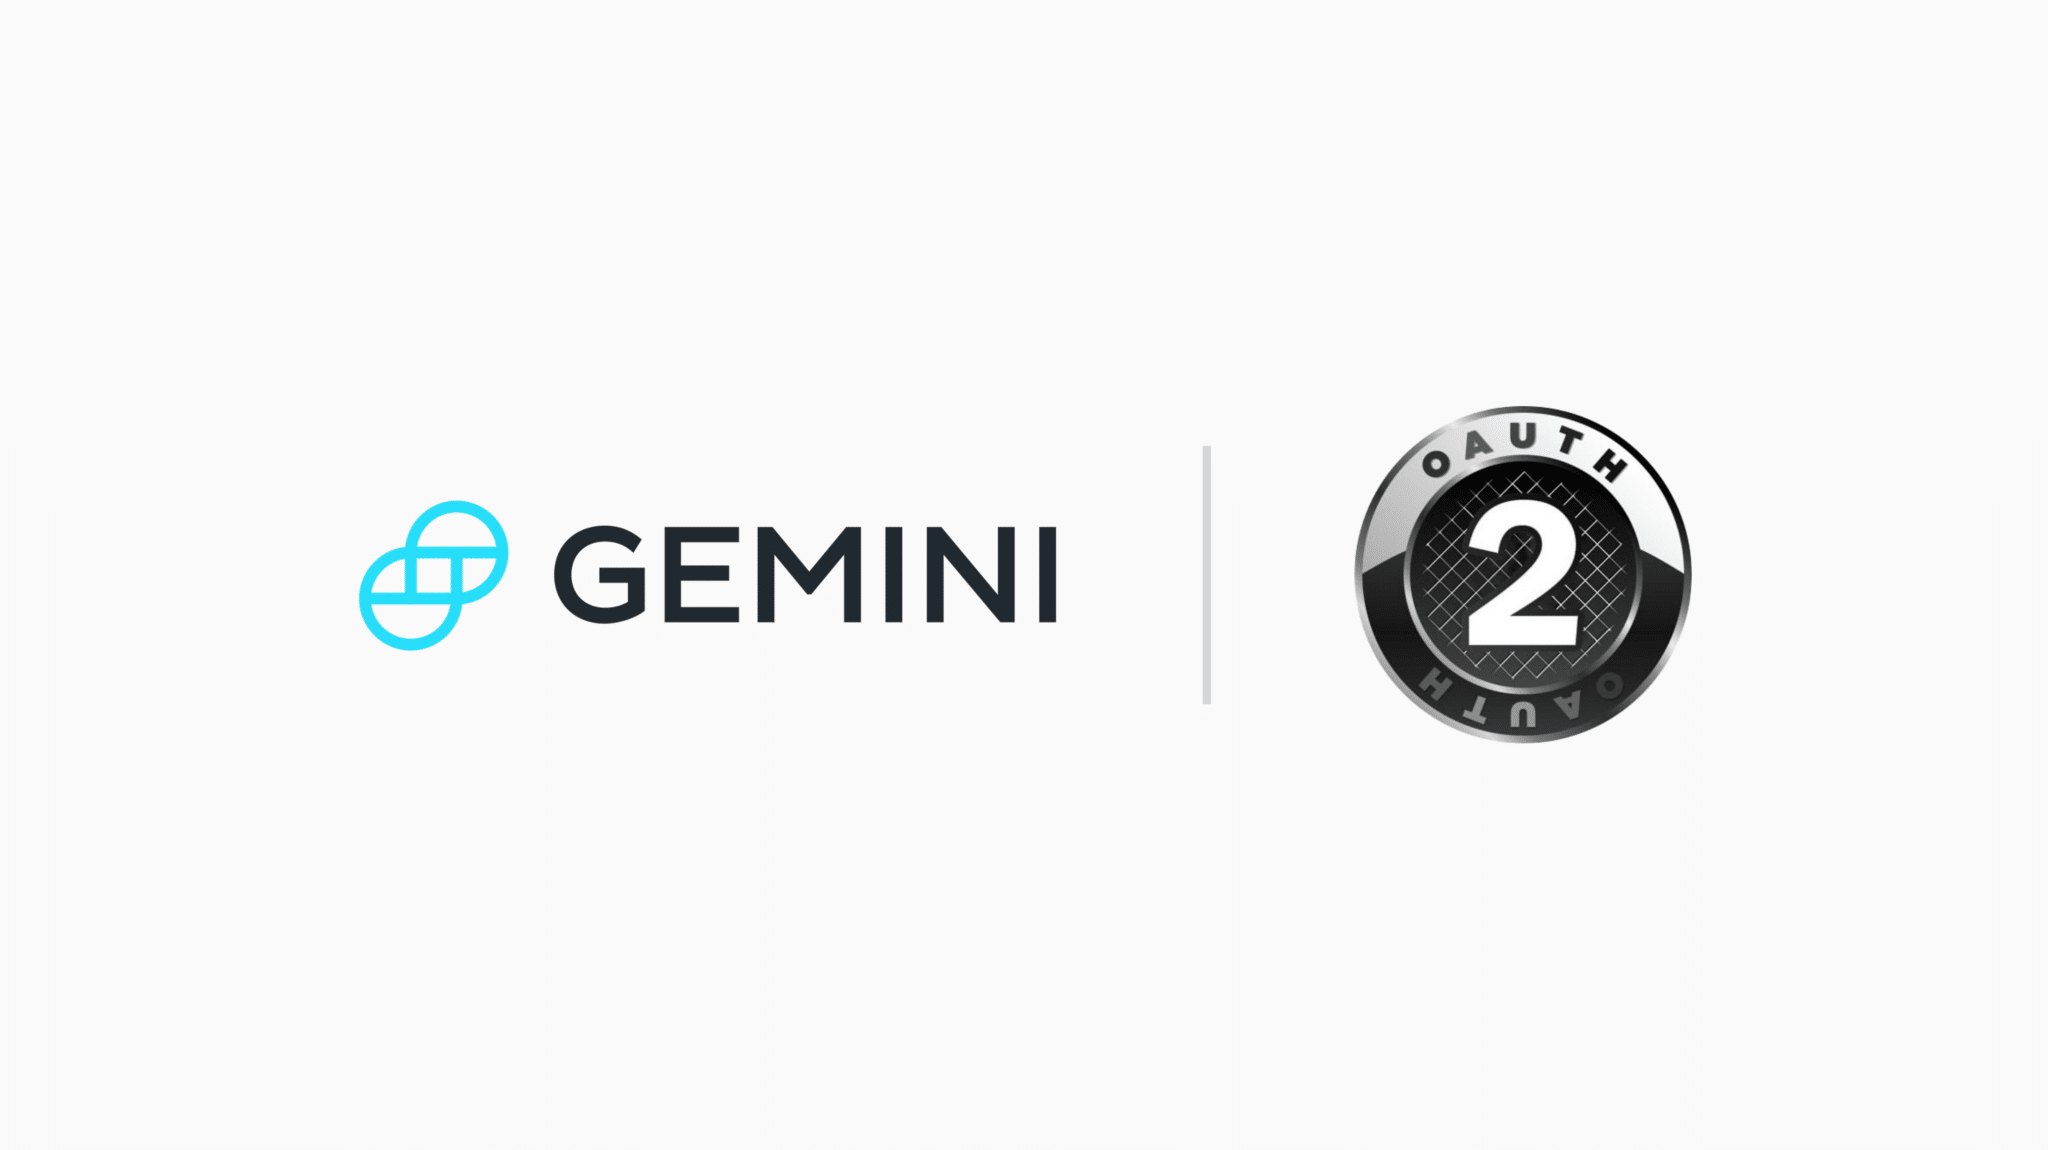 Gemini_oAuth2_Partnership_-_Blog